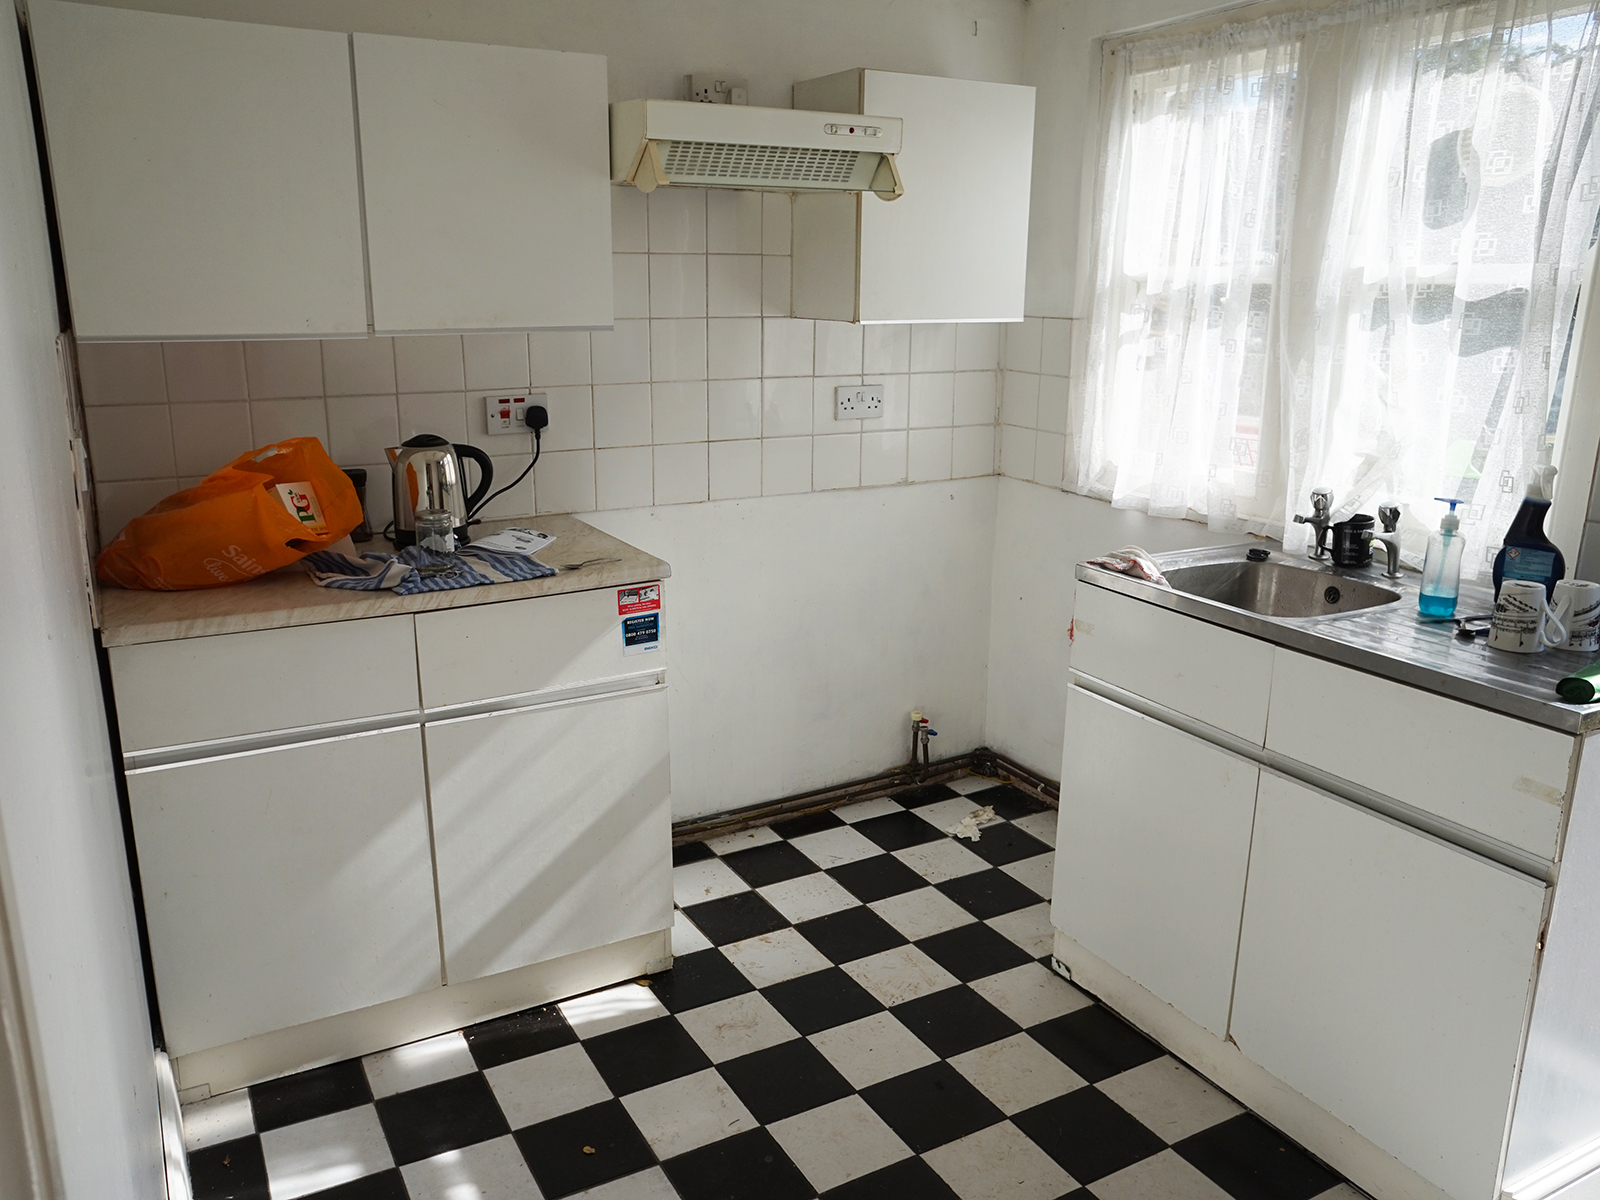 dated white kitchen